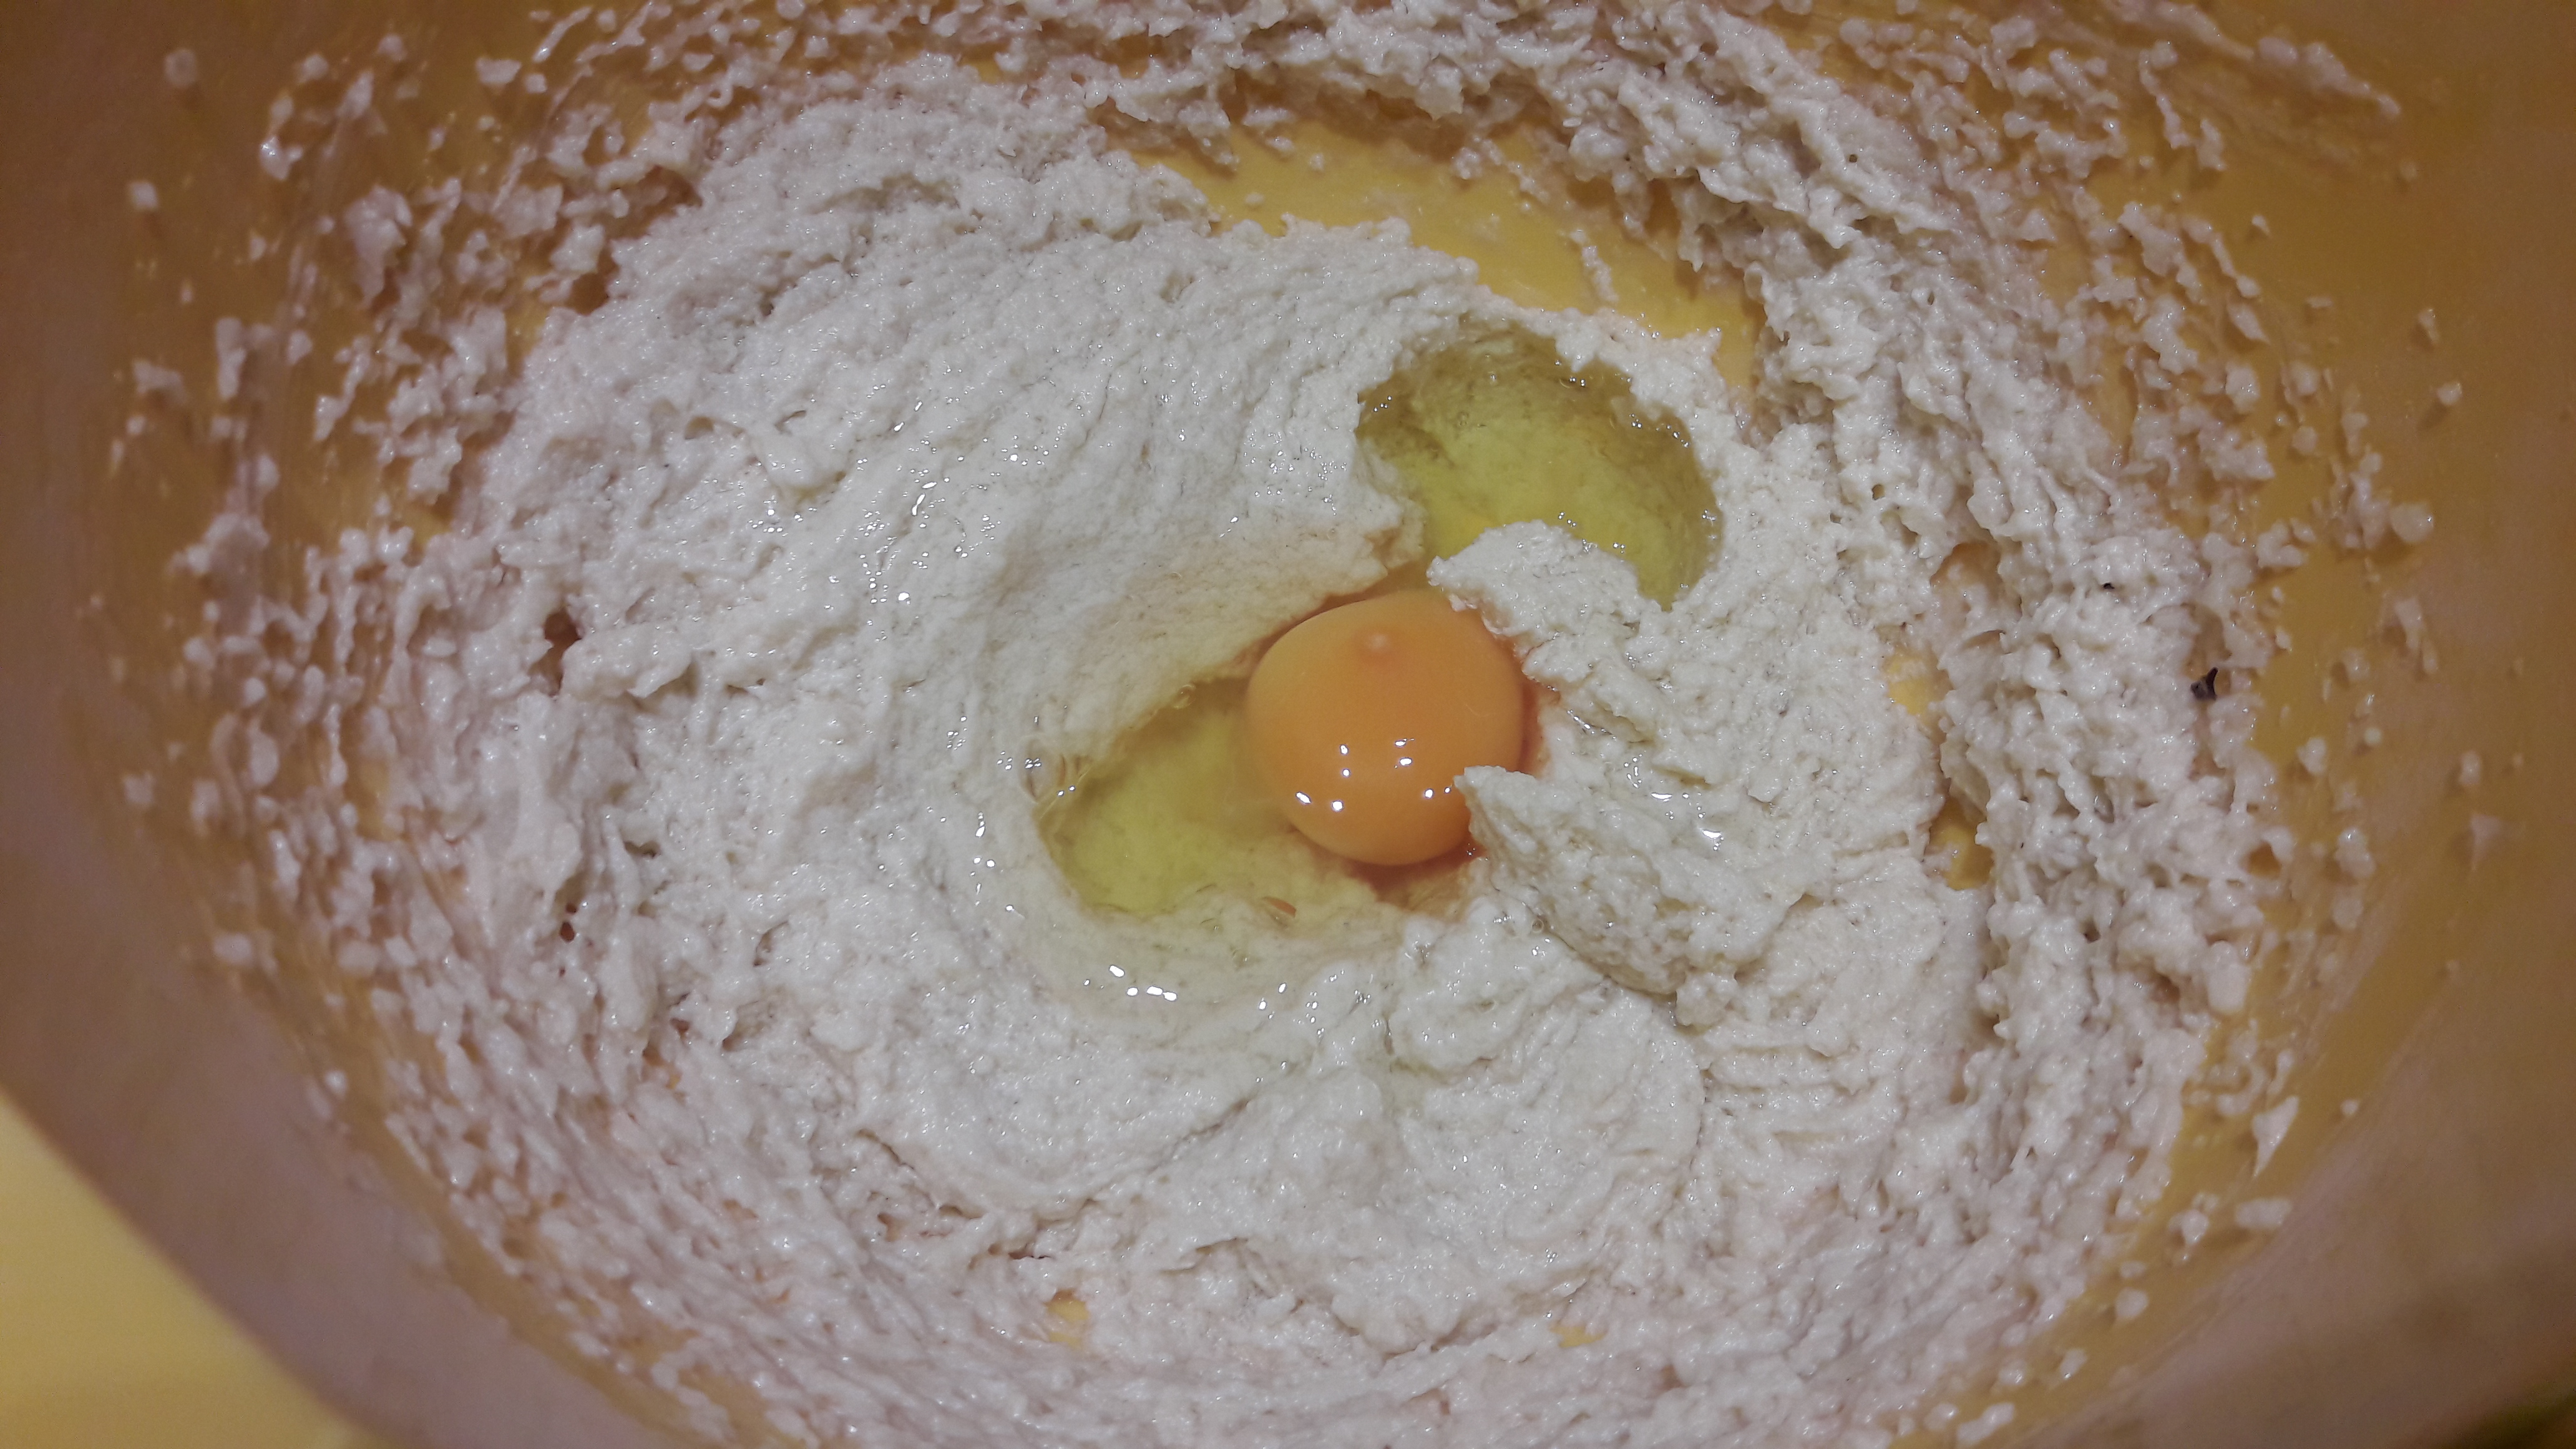 Desert prajitura cu urda, mere si crusta crocanta